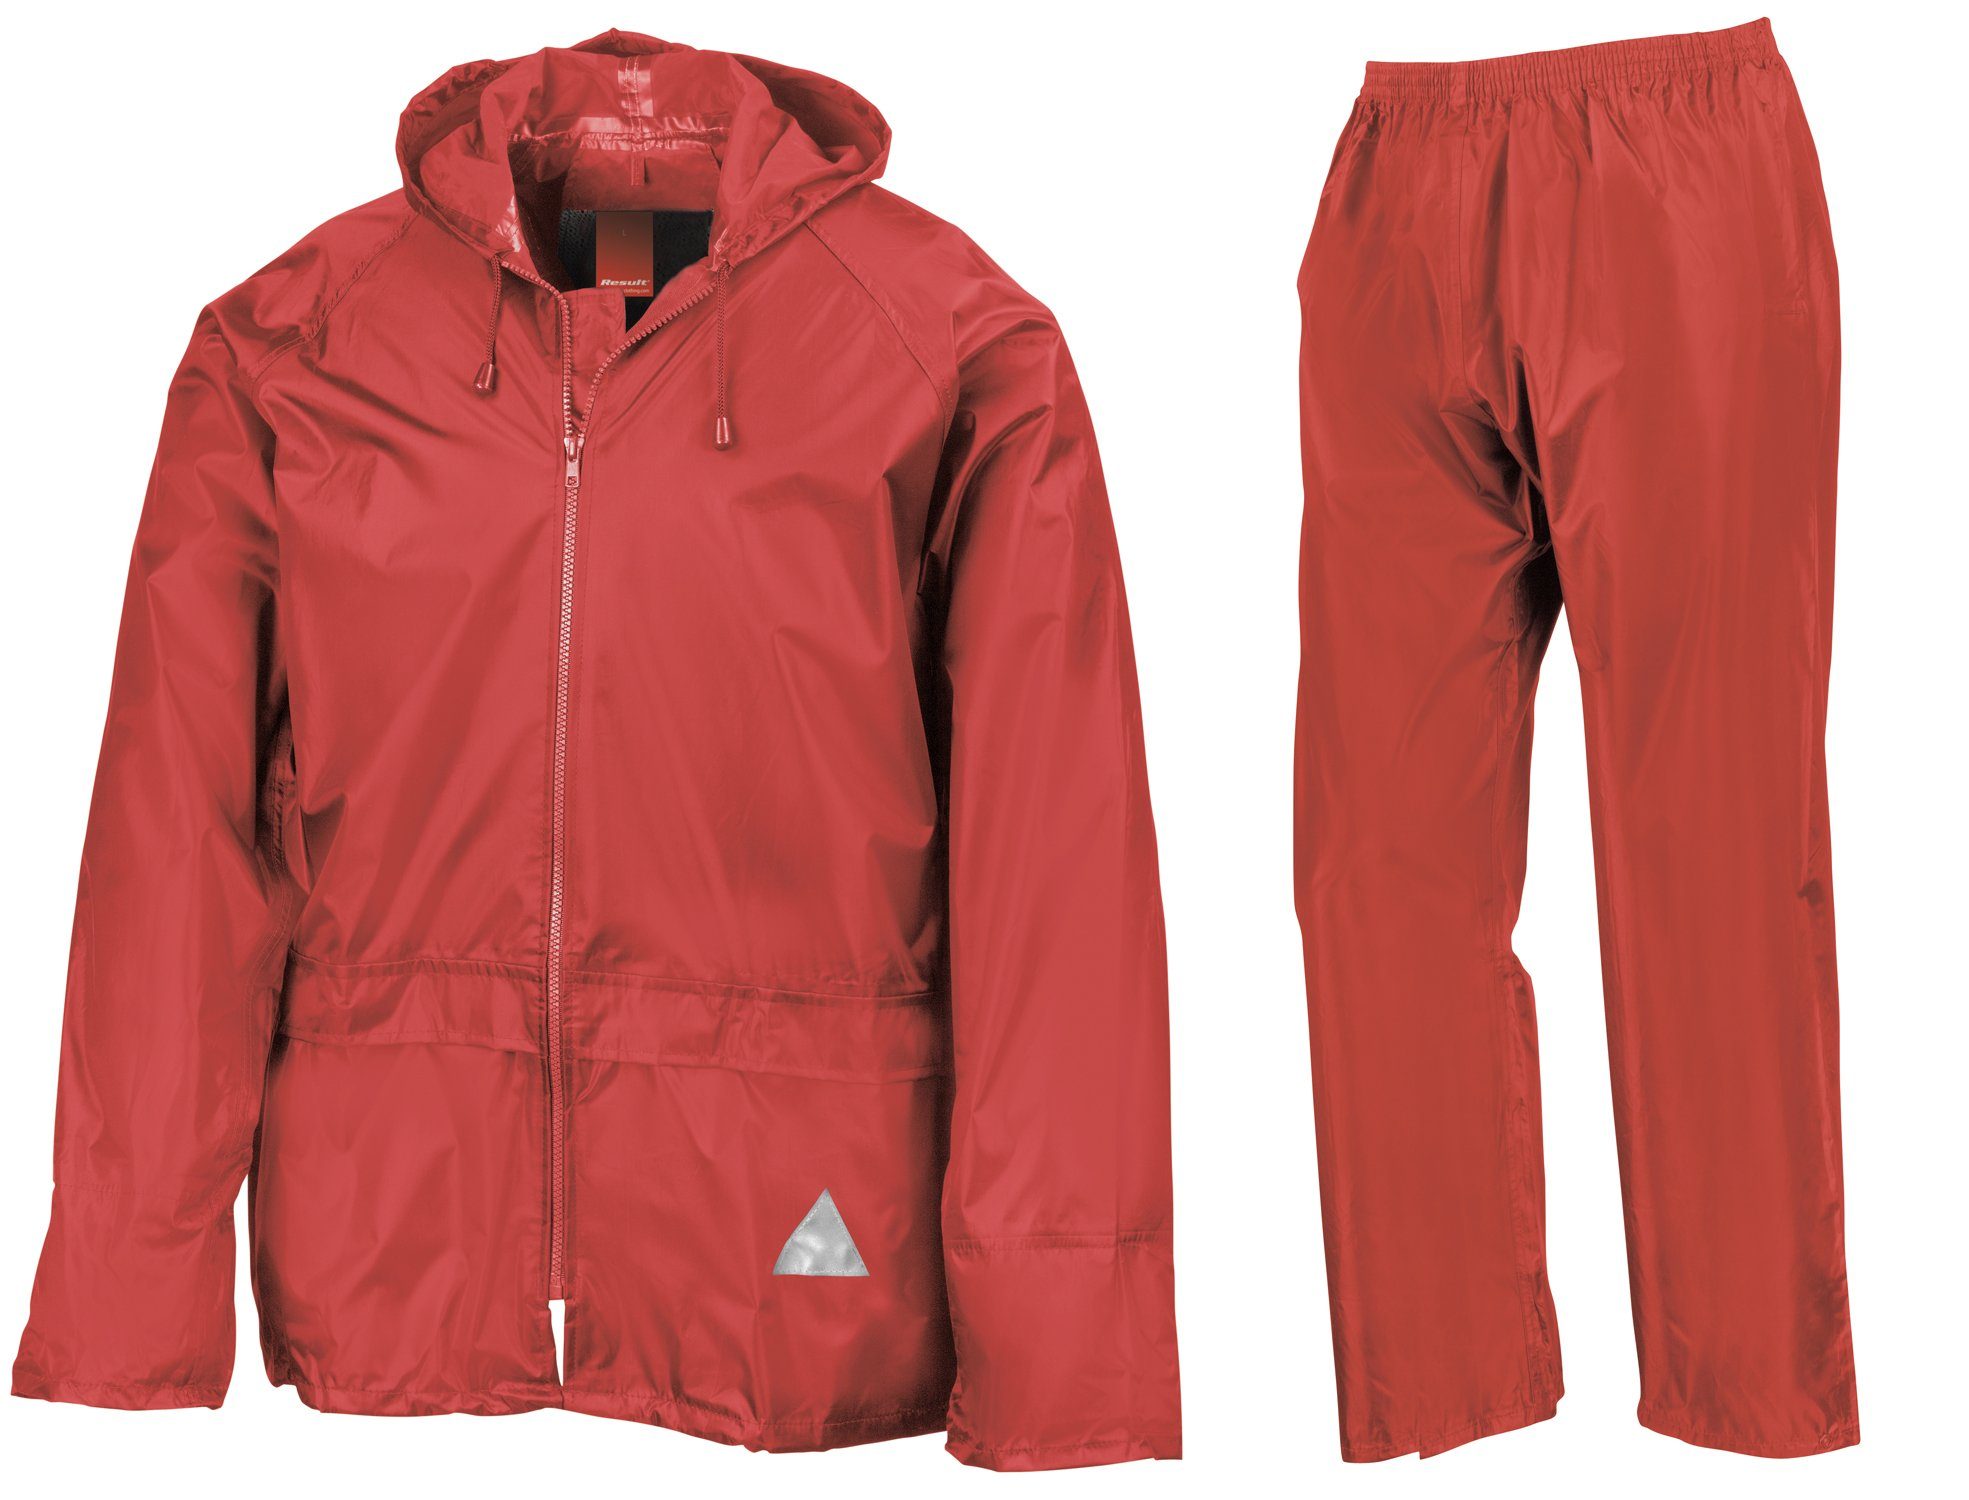 Regenanzug Regen wasserdicht Set Jacke RED Hose und Result FaS95 Anzug